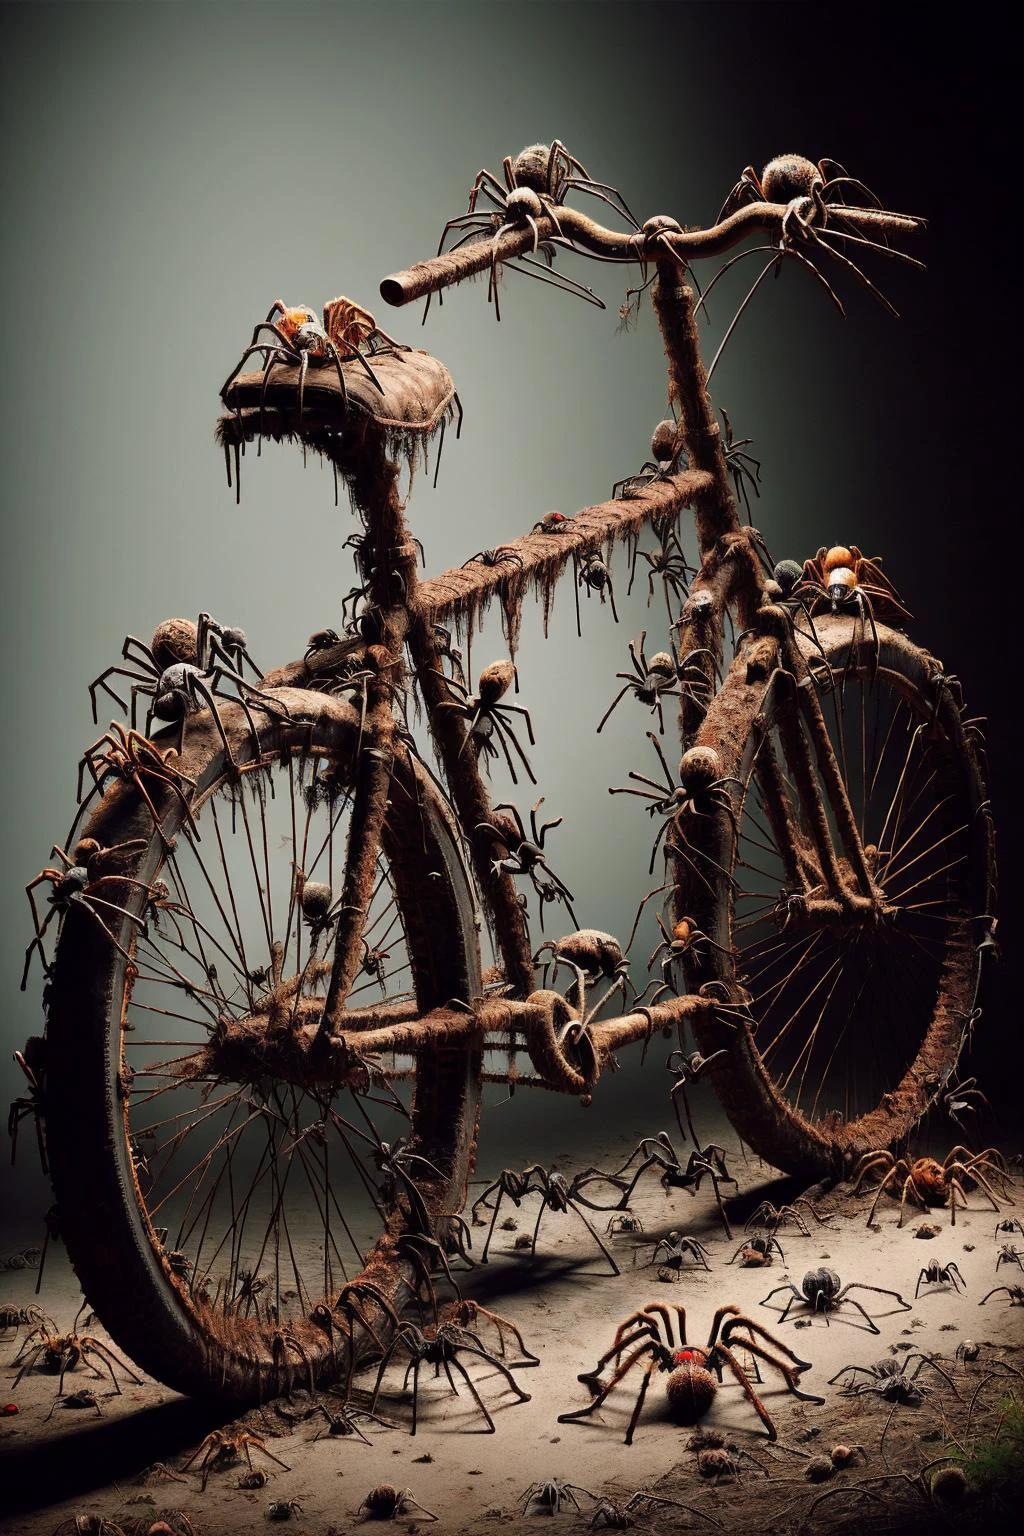 Ais-spiderz 骑着一辆生锈的自行车, 在一个被遗忘的谷仓里 